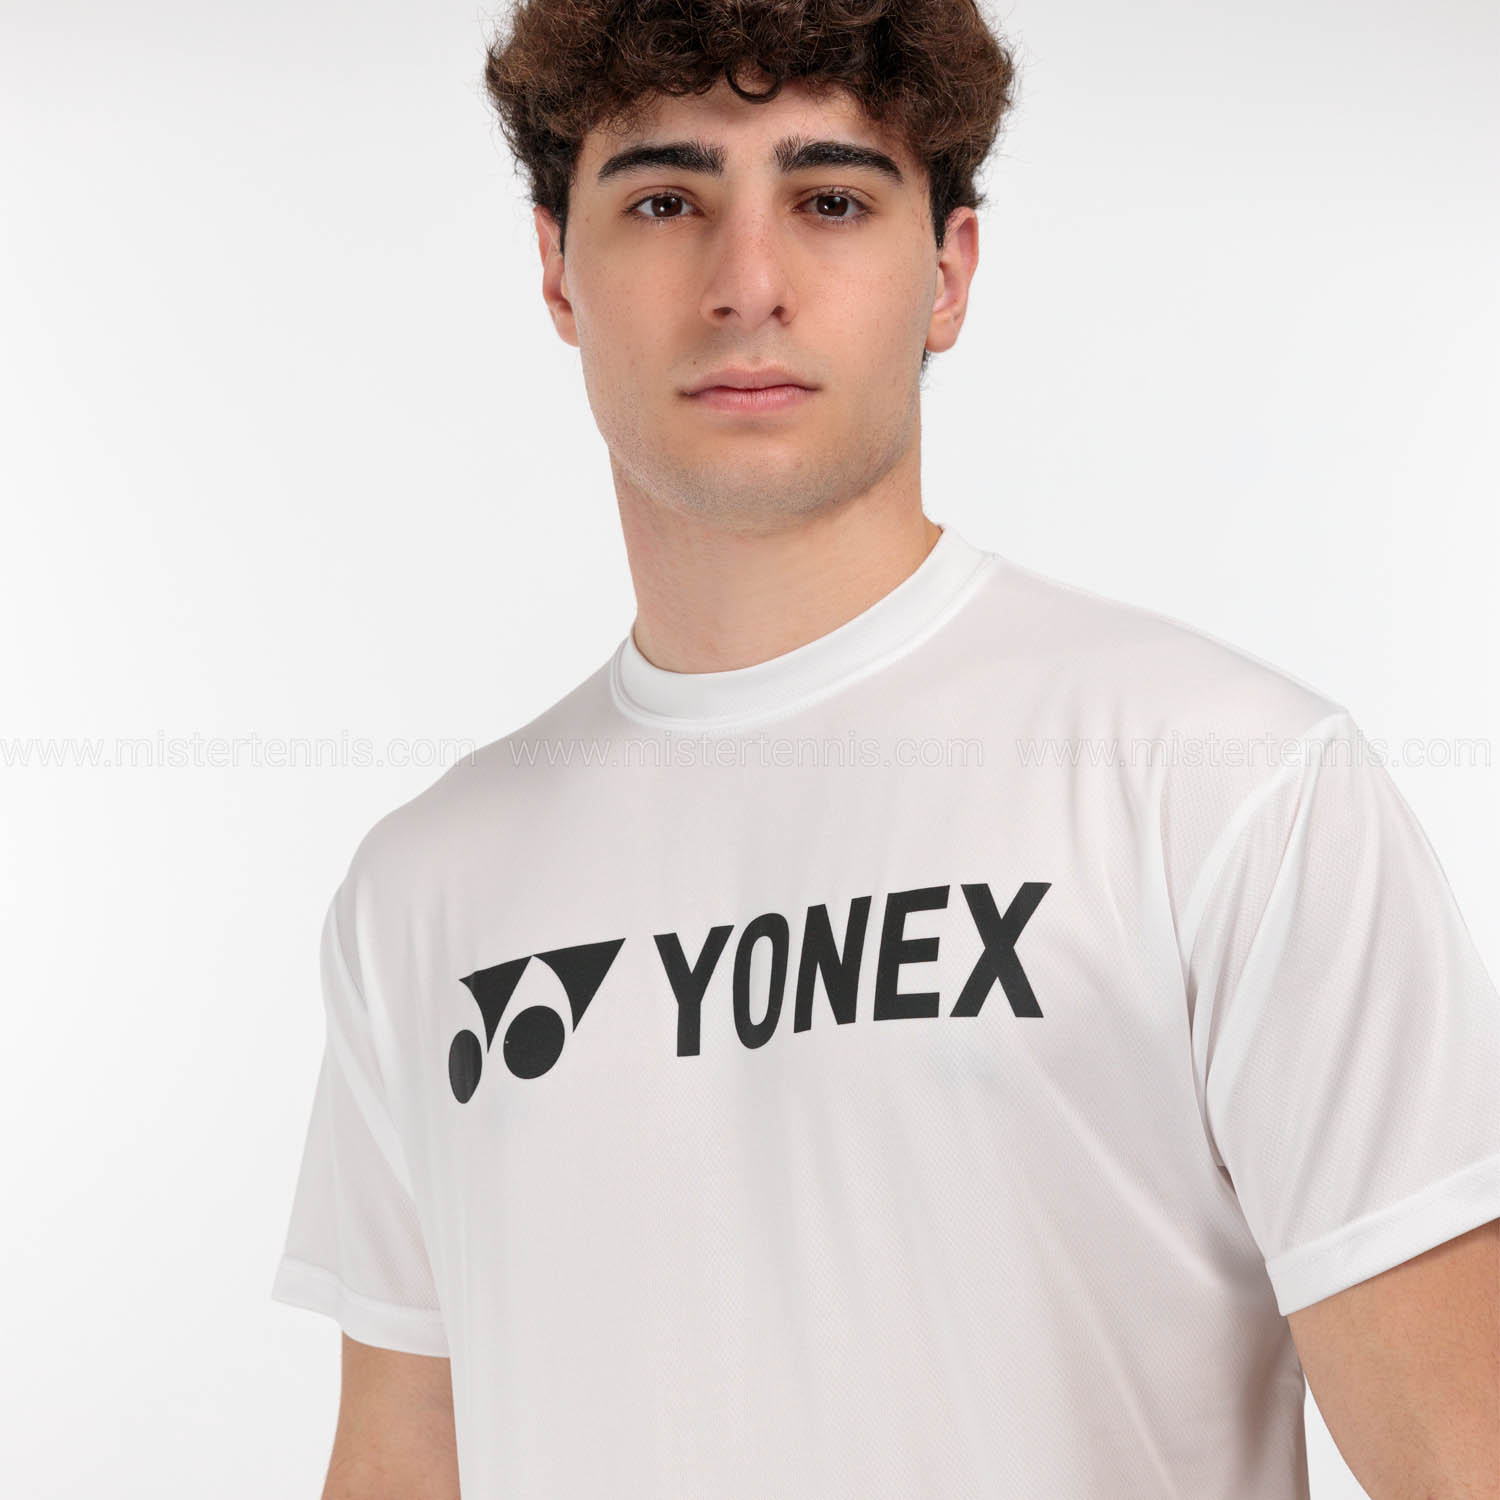 Yonex Club Logo Camiseta - White